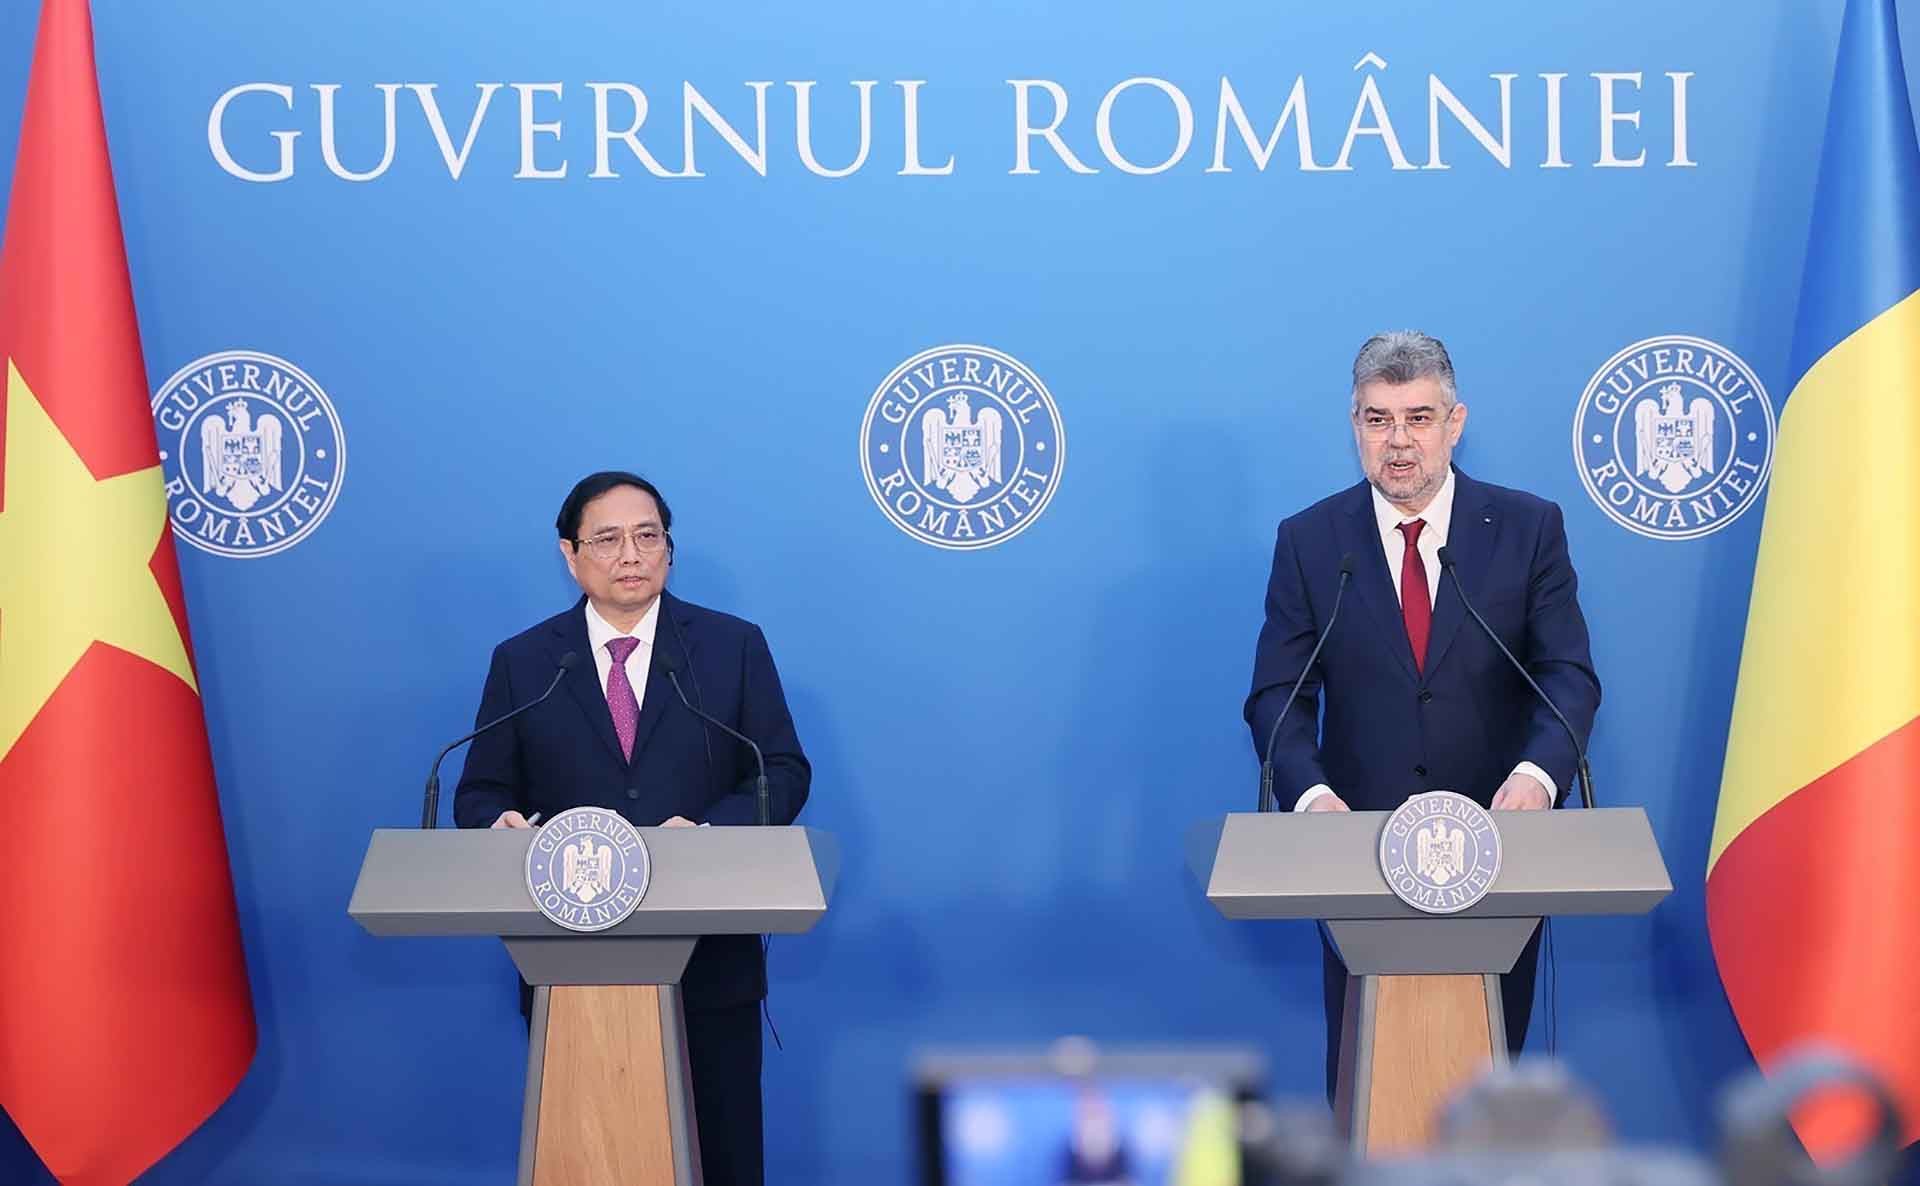 Thủ tướng Phạm Minh Chính và Thủ tướng Romania Ion Marcel Ciolacu họp báo. (Nguồn: TTXVN)